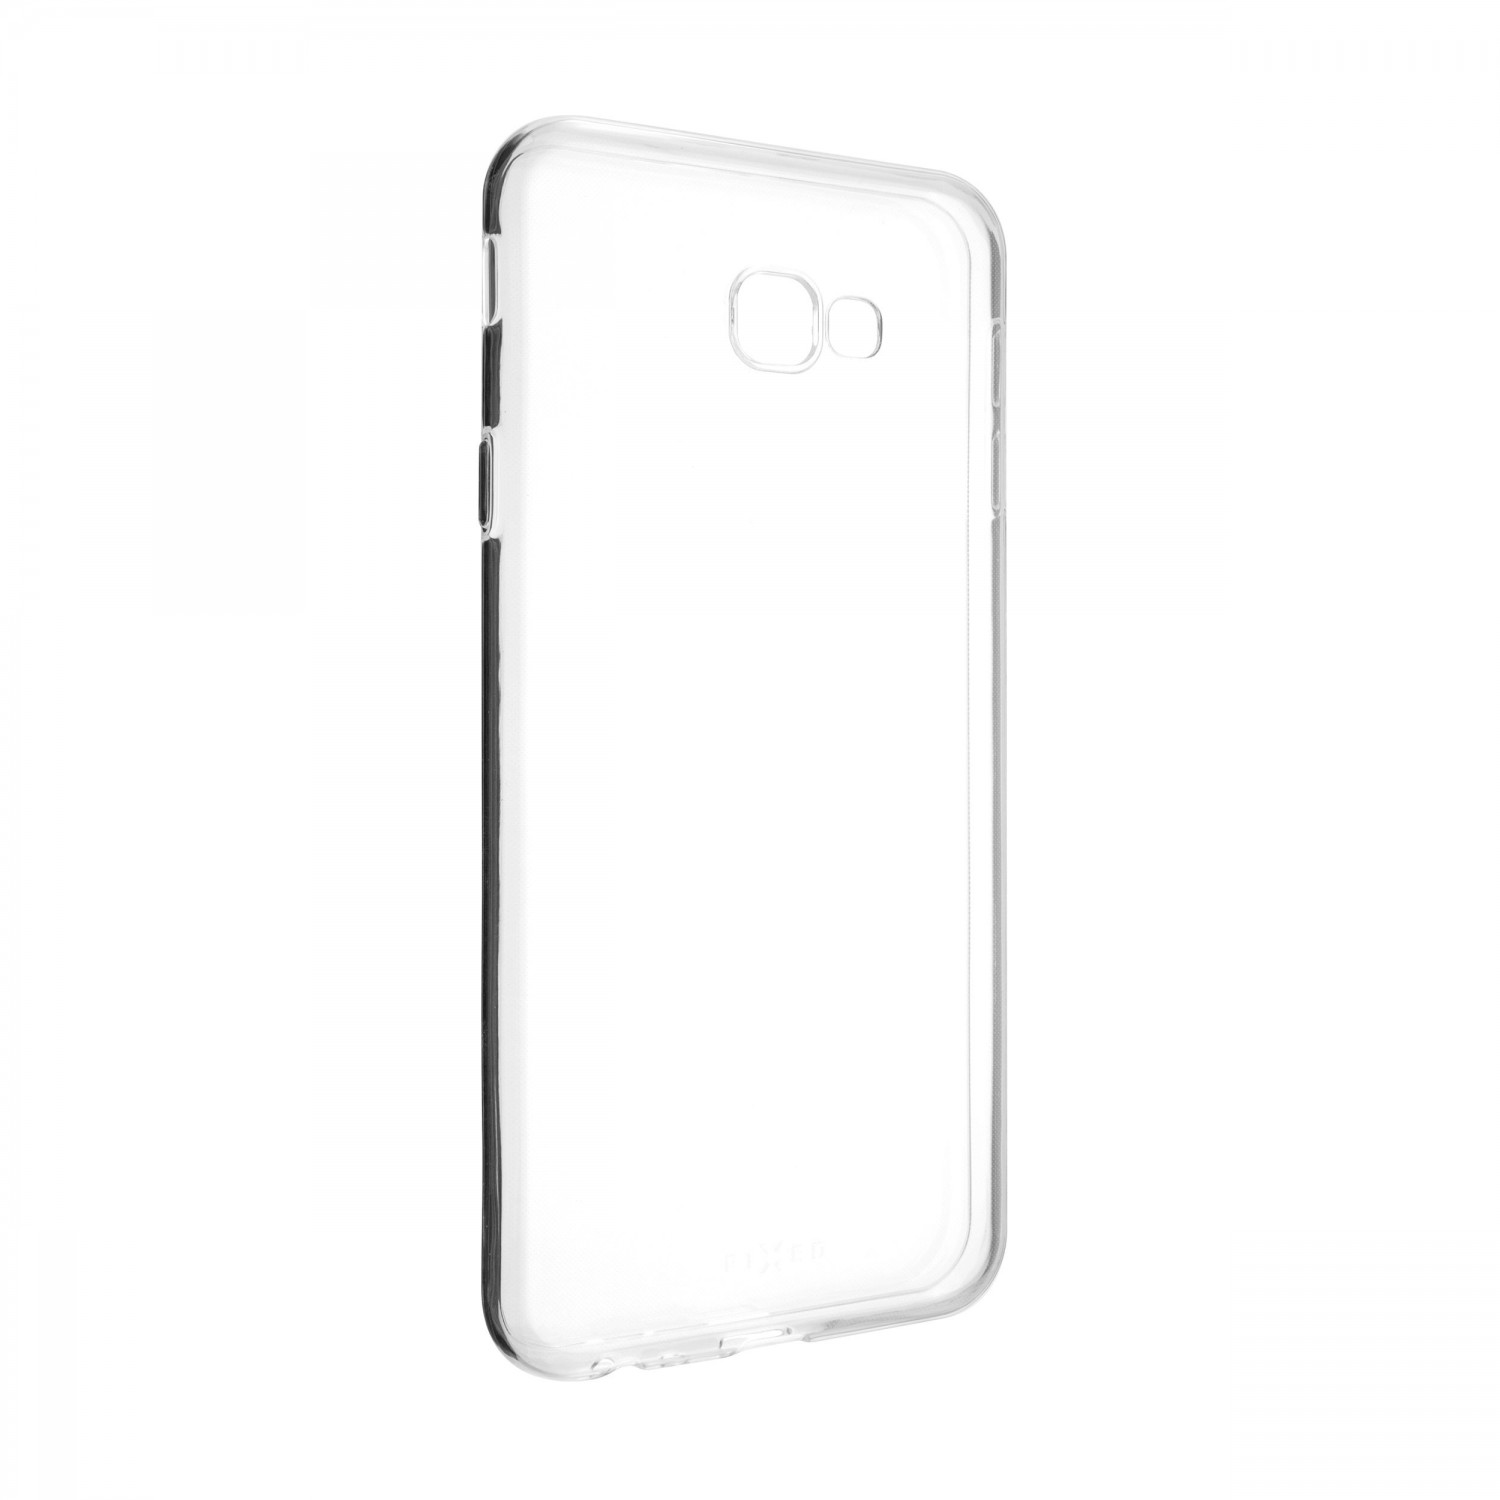 Ultratenké silikonové pouzdro FIXED Skin pro Samsung Galaxy J4+, transparentní